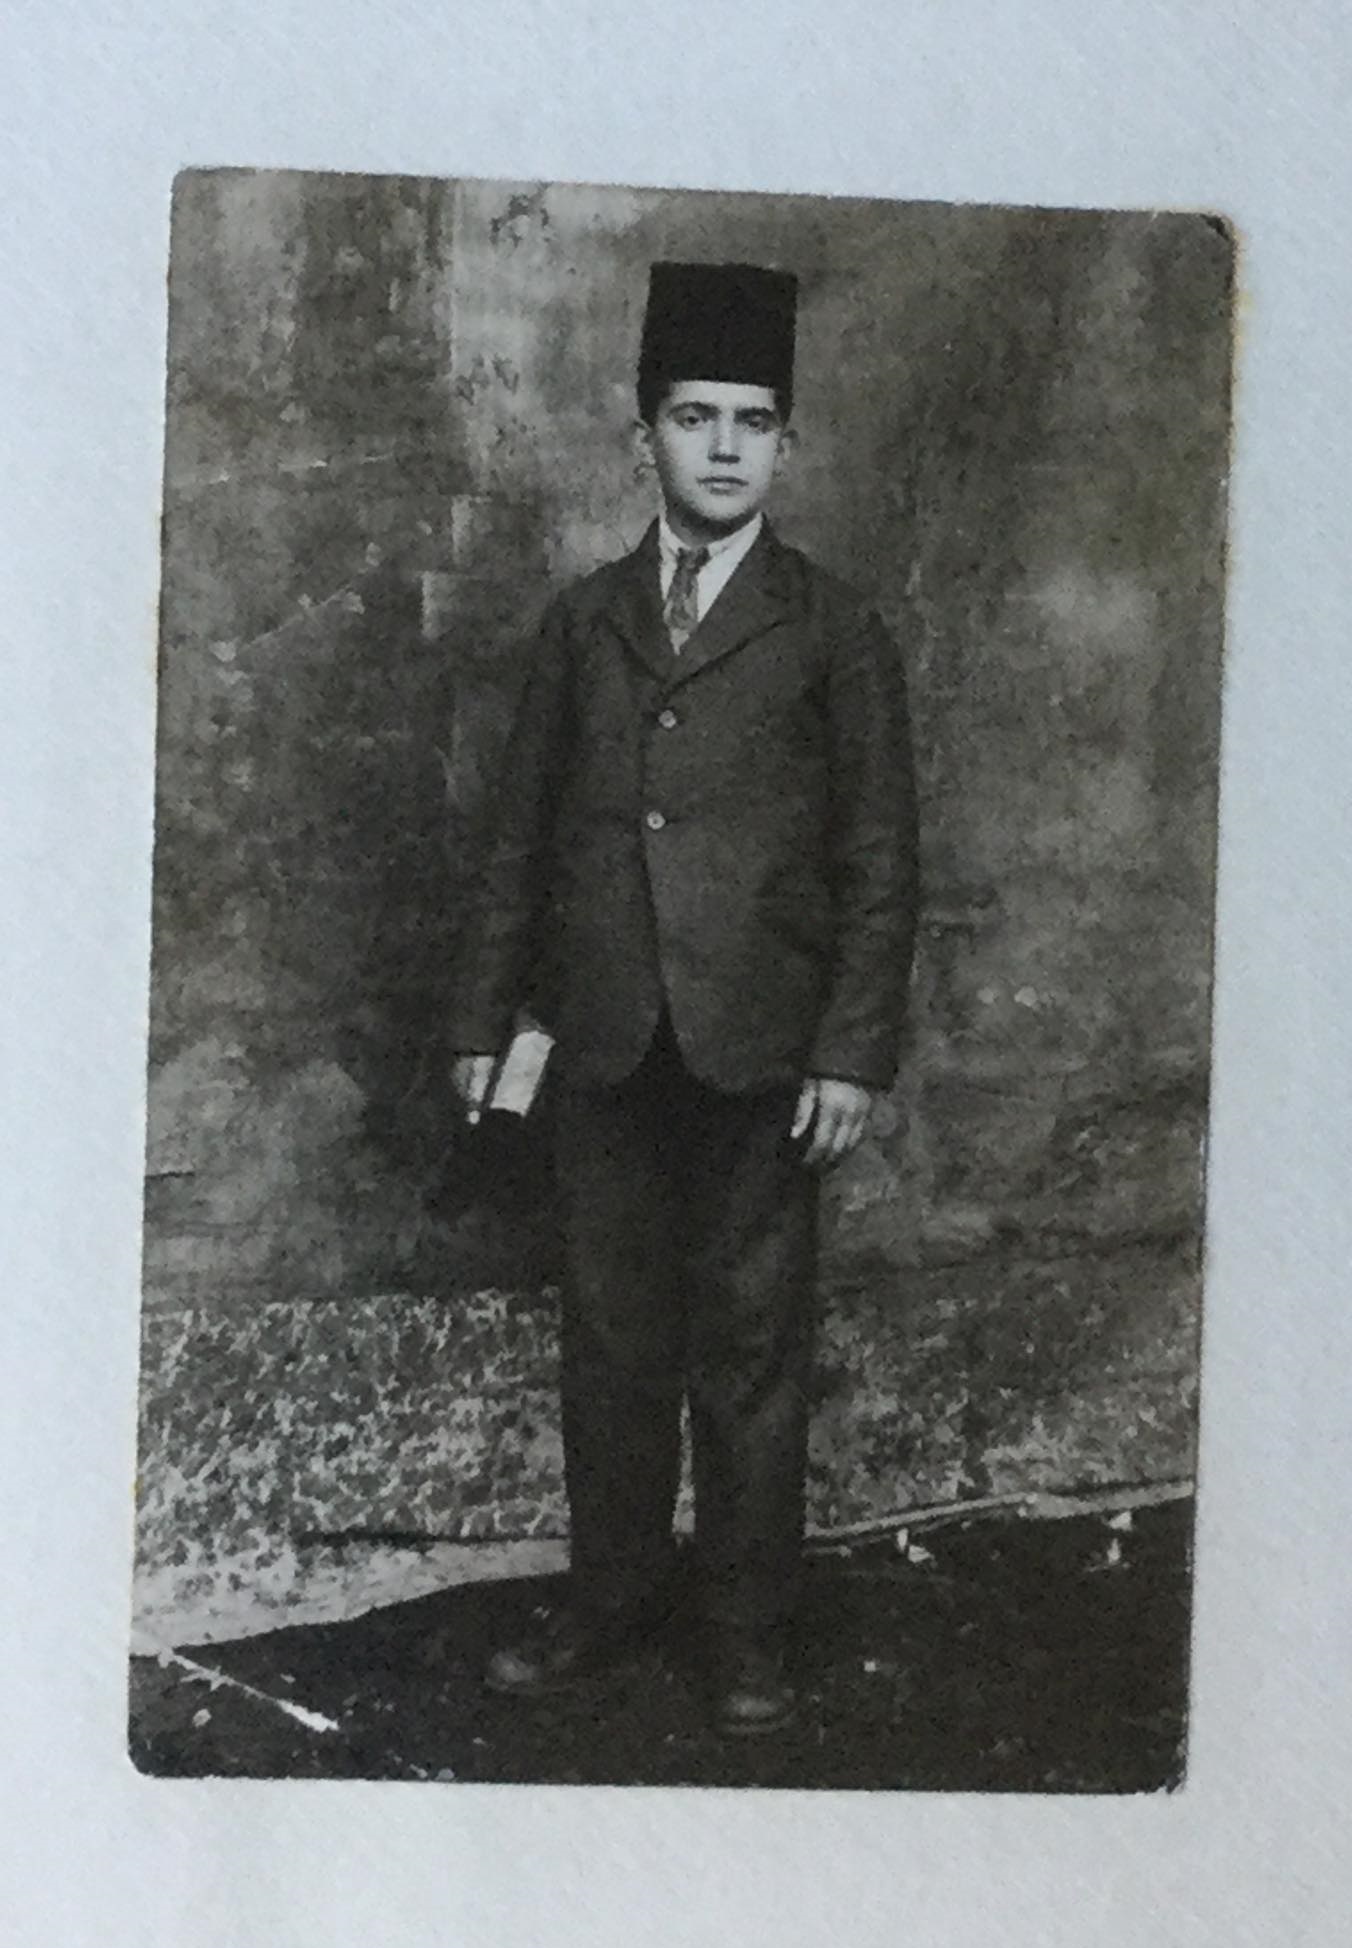 التاريخ السوري المعاصر - توفيق عز الدين أثناء دراسته الثانوية في روضة المعارف الإسلامية في القدس